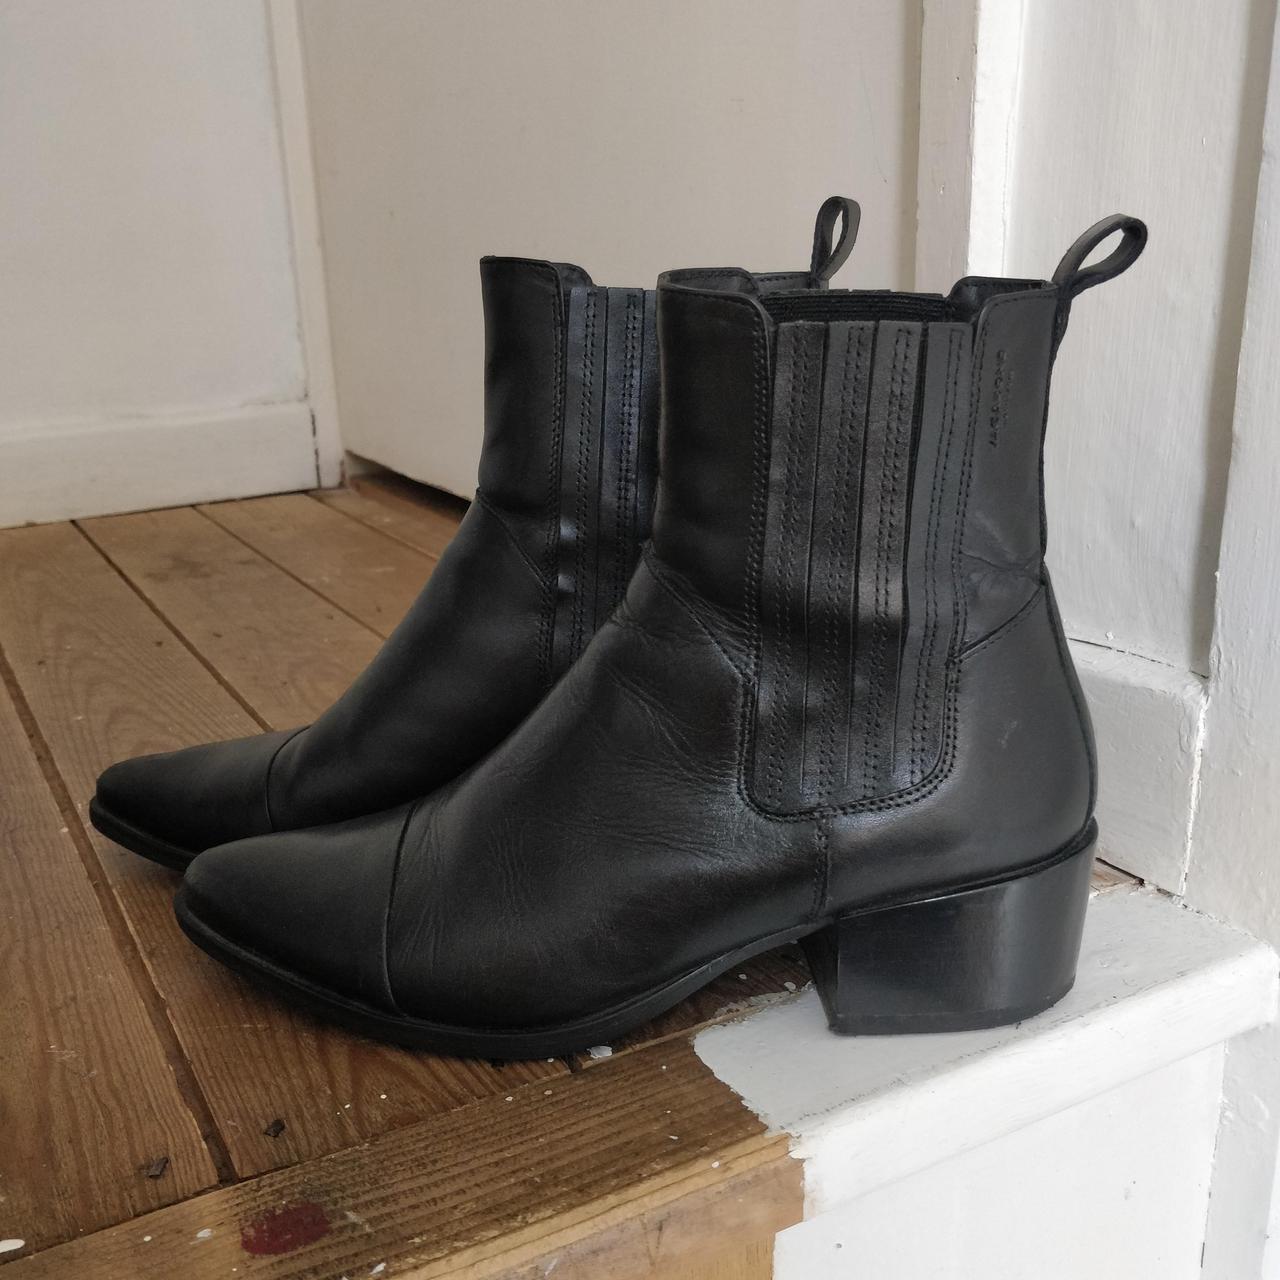 Vagabond Women's Boots | Depop